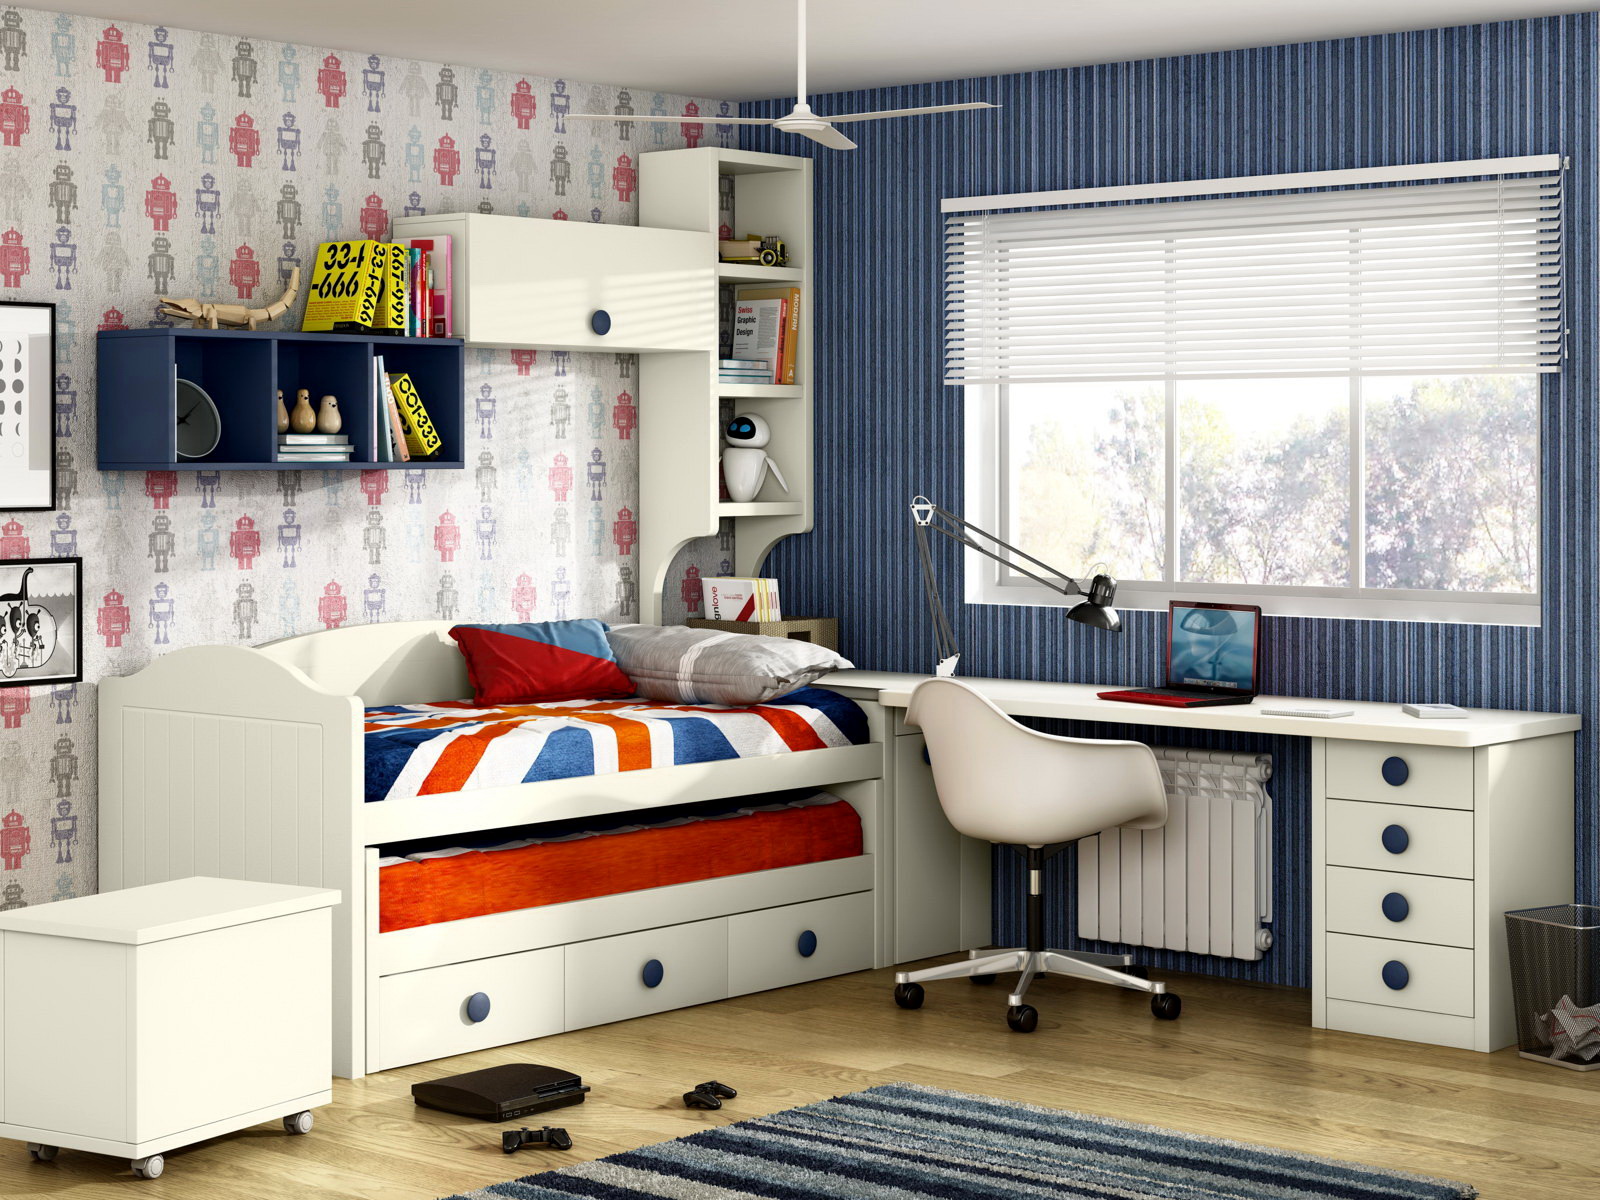 Dormitorio Infantil Y Juvenil P&C KIDS 3B by Piñero y Cabrero en muebles antoñán® León